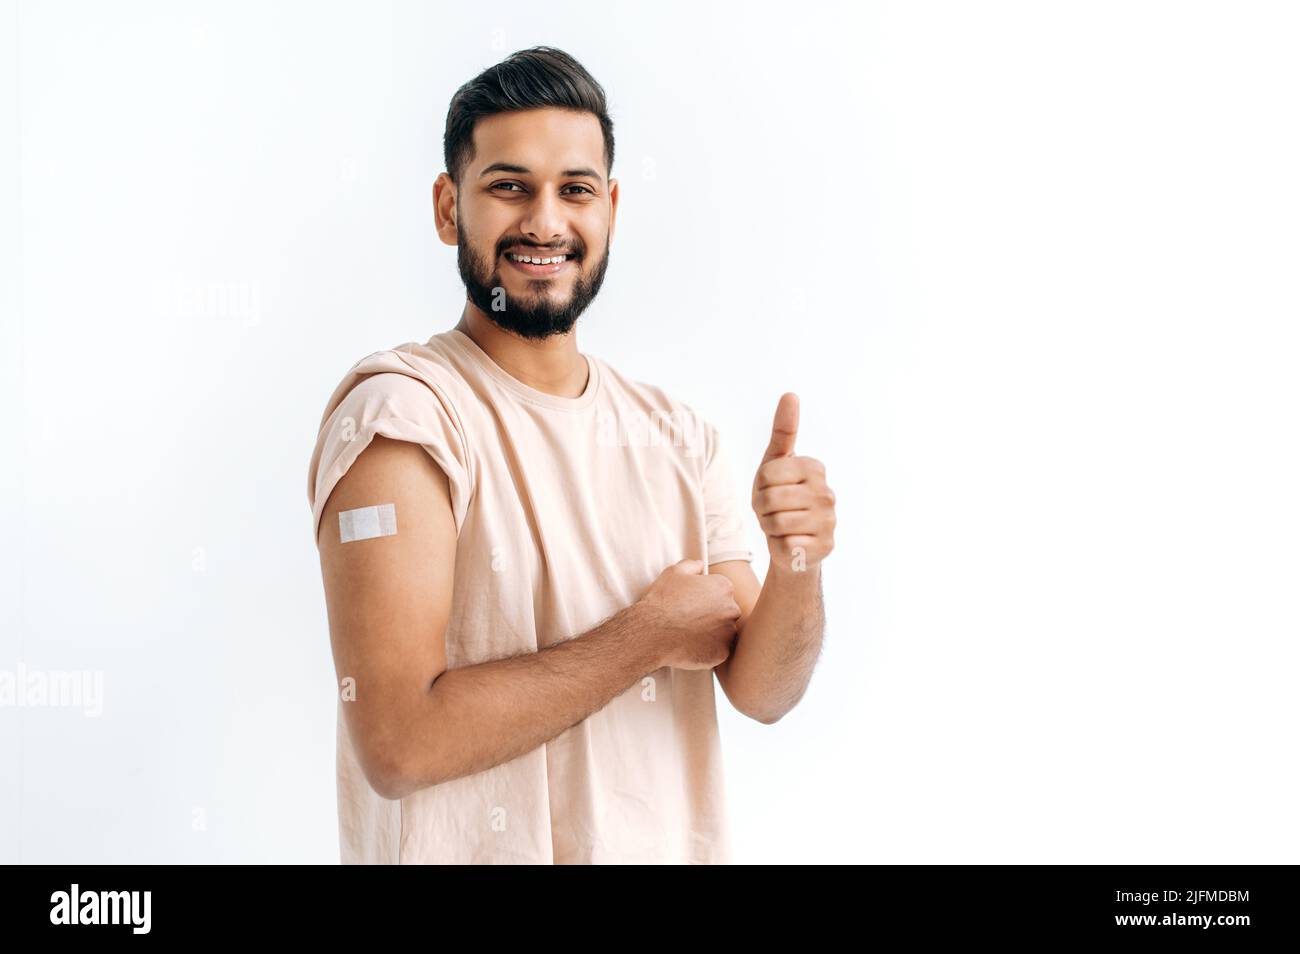 Impfungs- und Präventionskonzept. Positiver inder oder araber, der nach der Impfung Verbandsputz am Arm zeigt, Impfungen gegen Viren, auf isoliertem weißen Hintergrund steht, lächelt Stockfoto